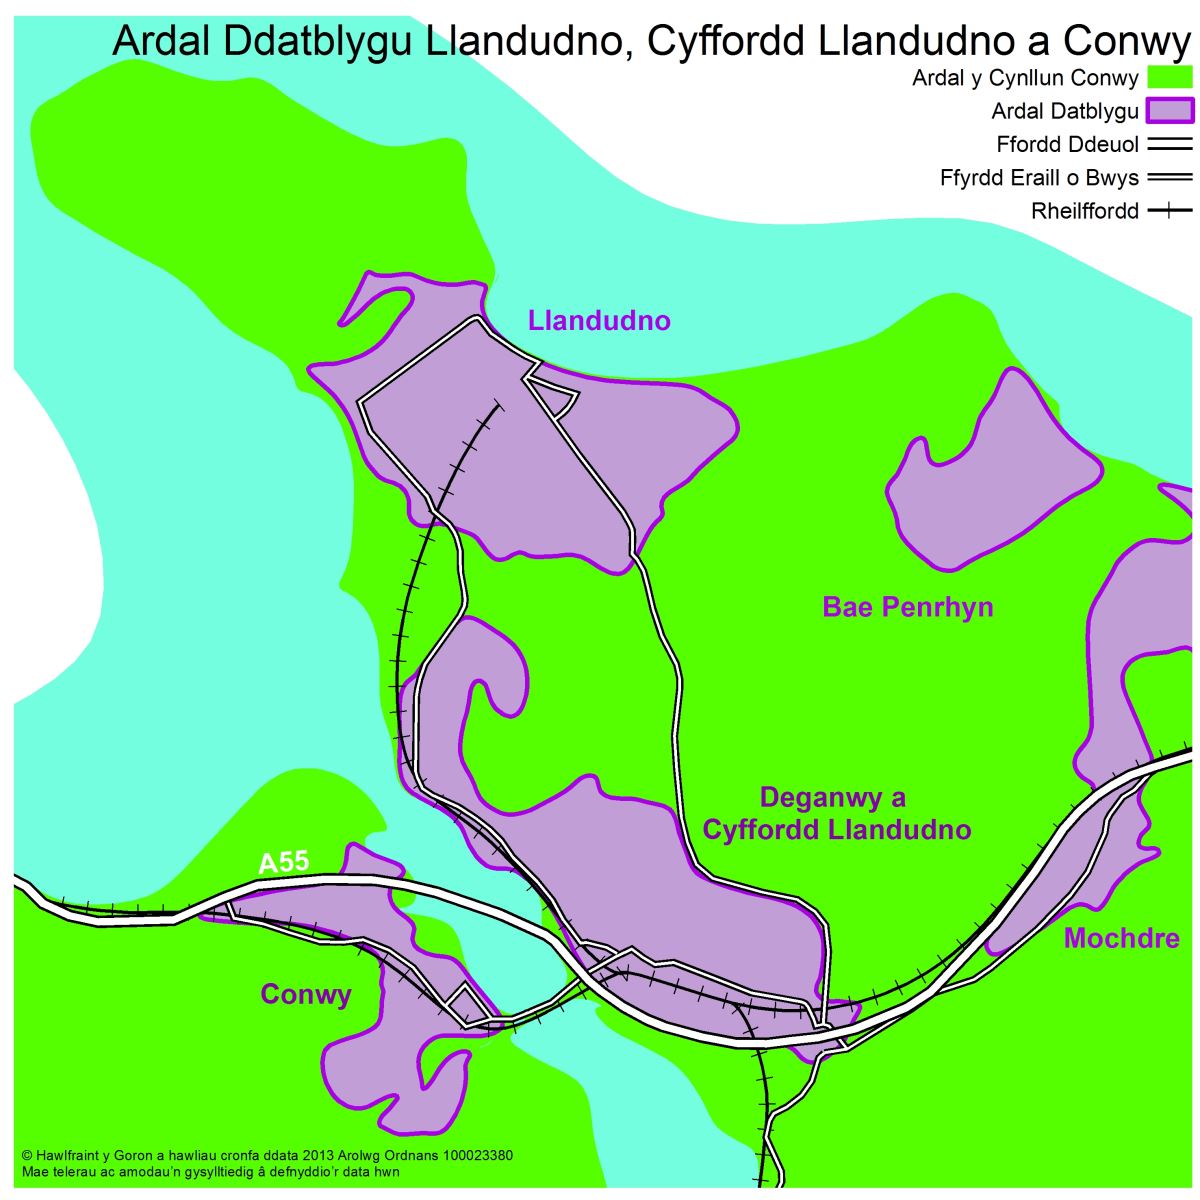 Ardal Ddatblygu Llandudno, Cyffordd Llandudno a Conwy